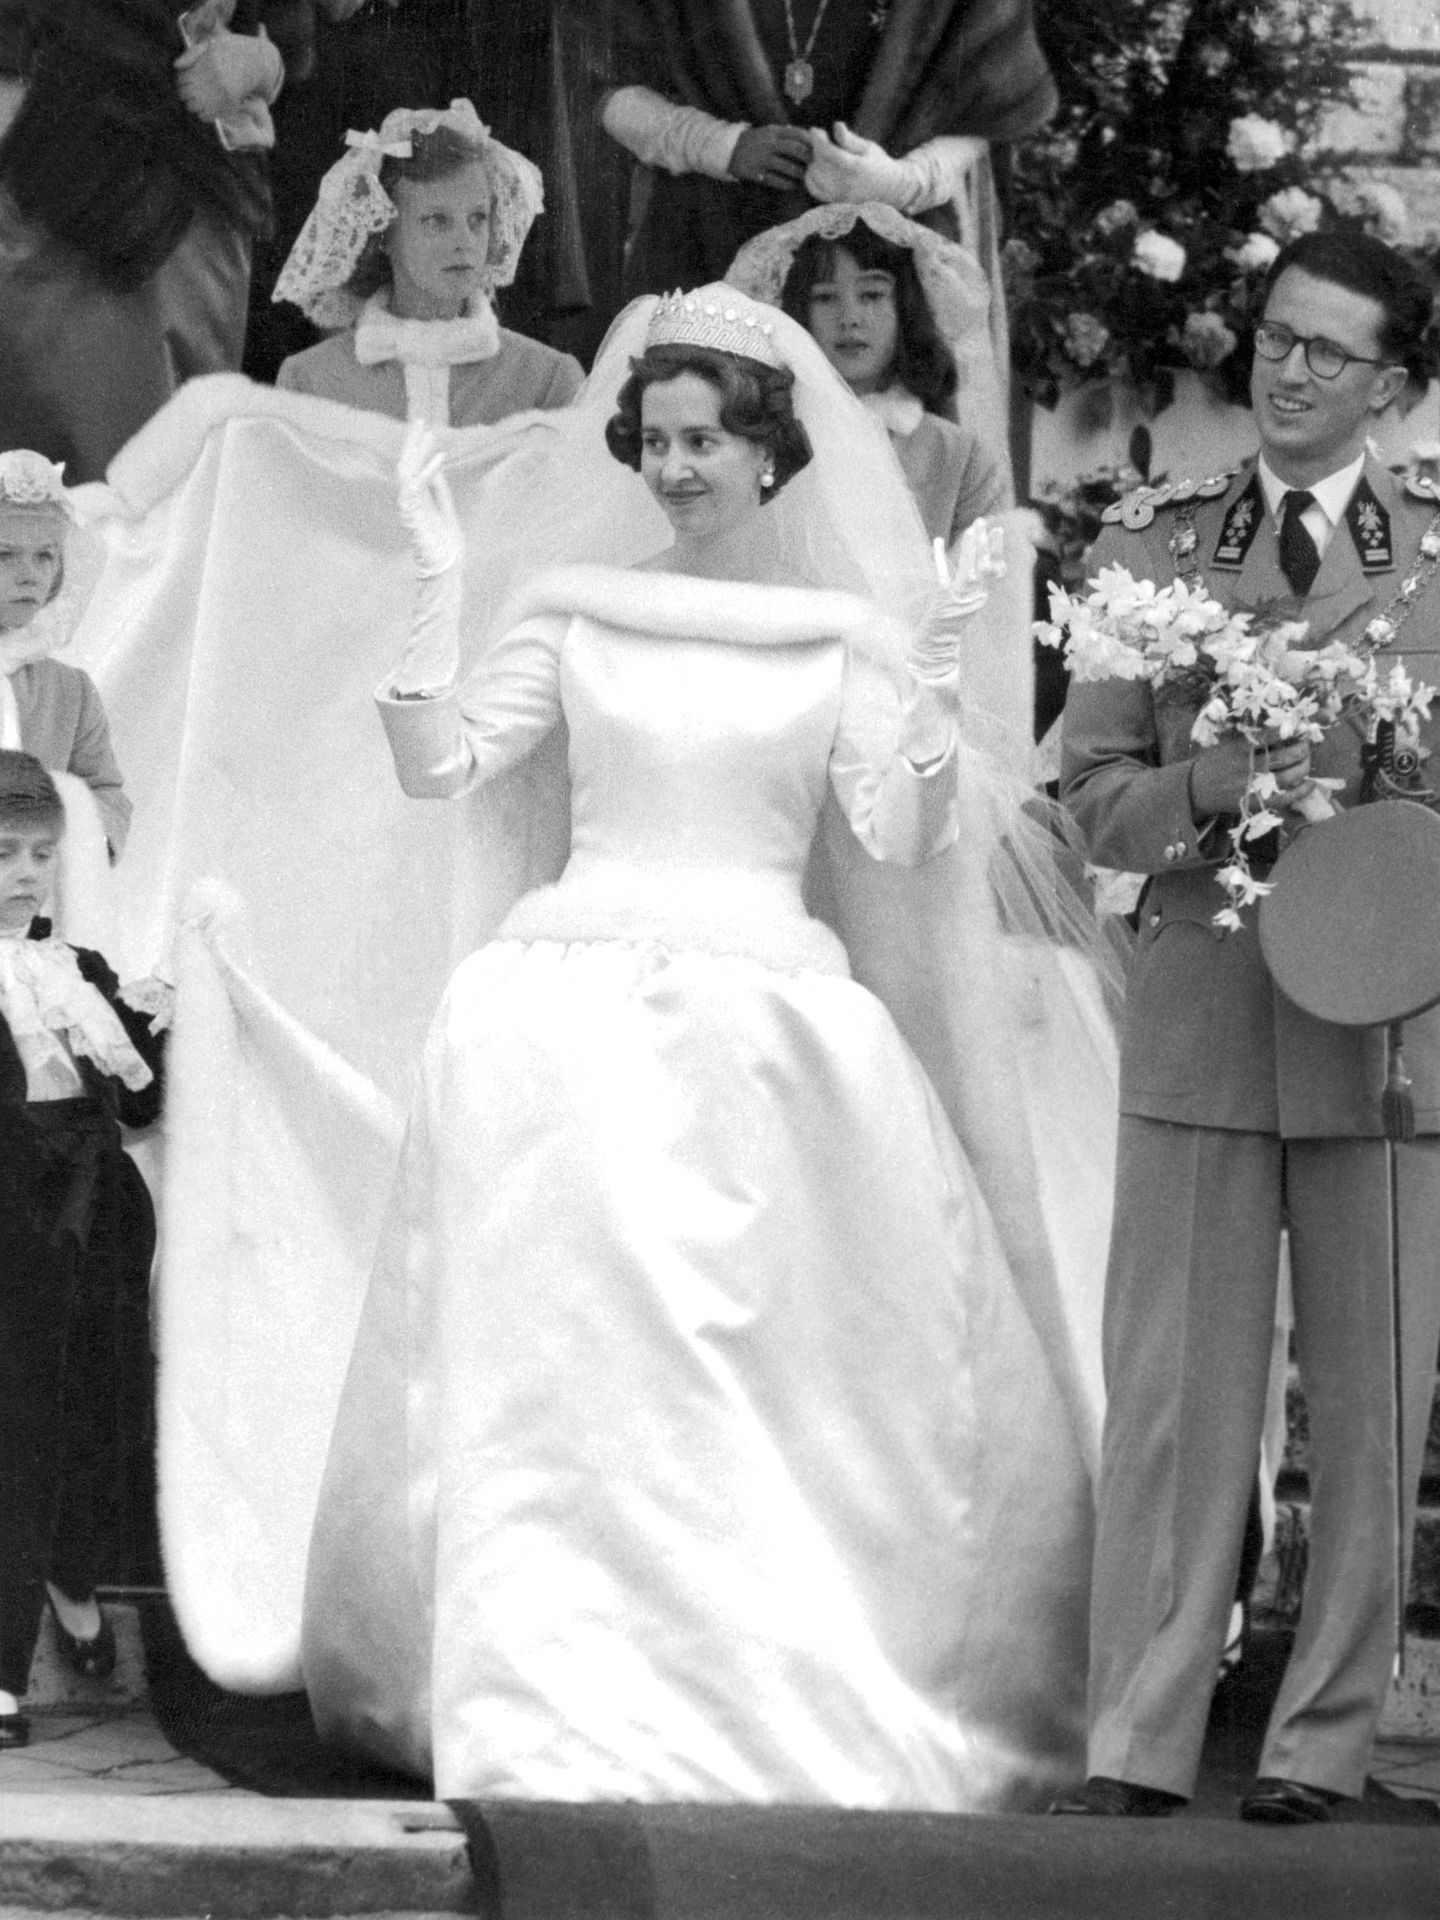 La boda de Balduino y Fabiola. (Cordon Press)